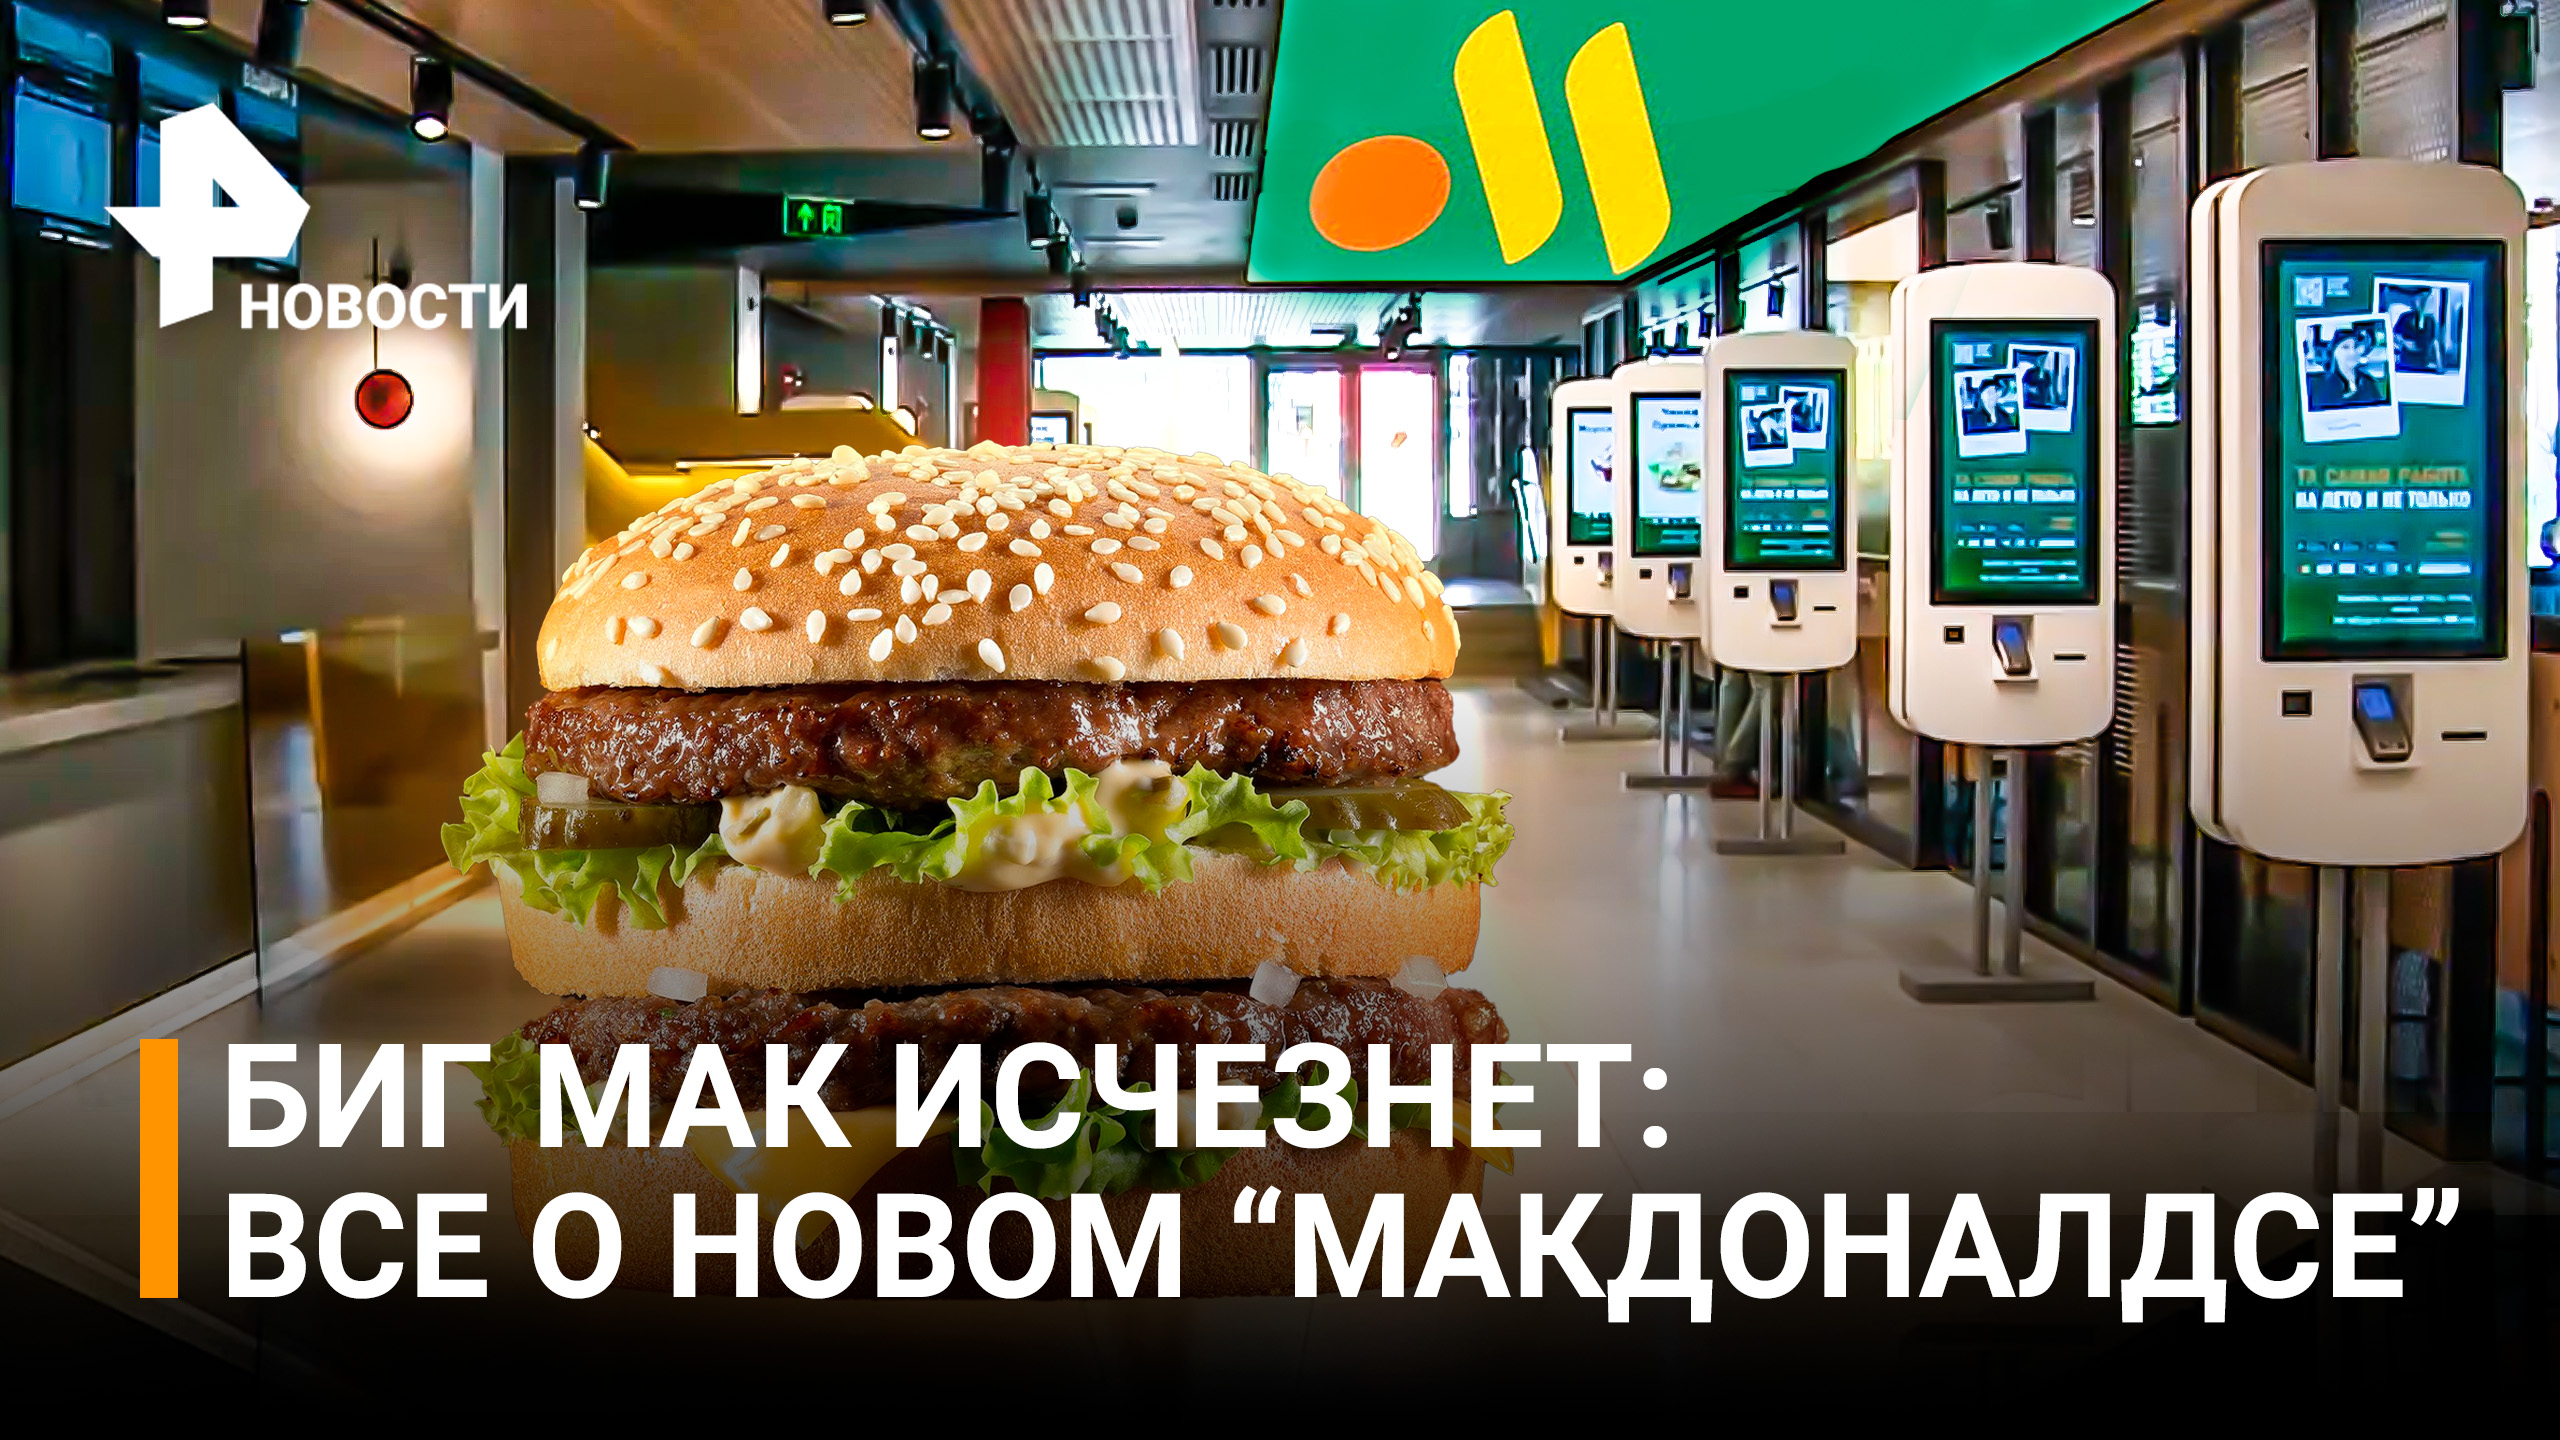 Первые кадры из ресторана российского McDonald